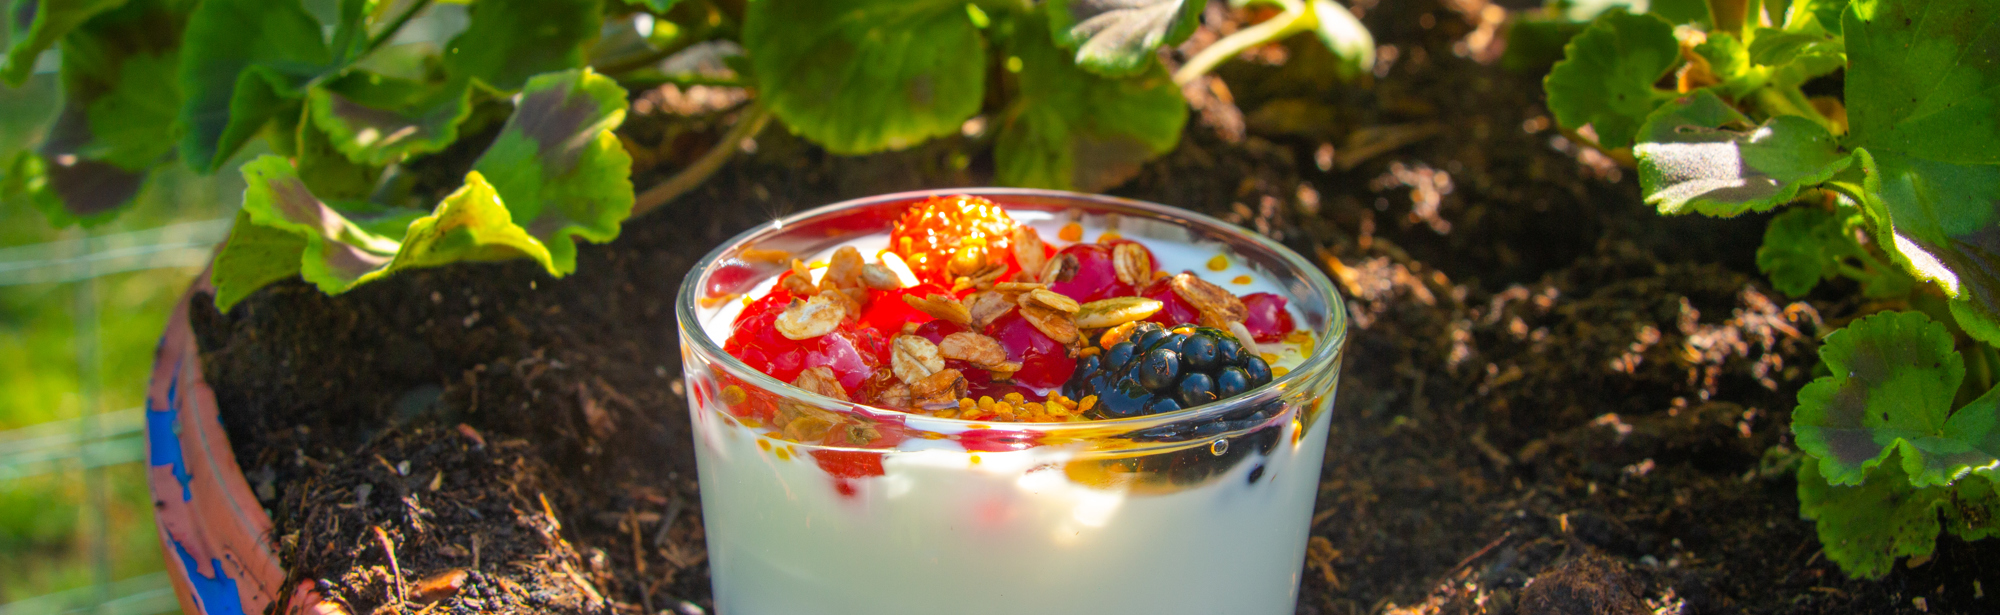 Een kommetje yoghurt met fruit dat in een bloembak staat